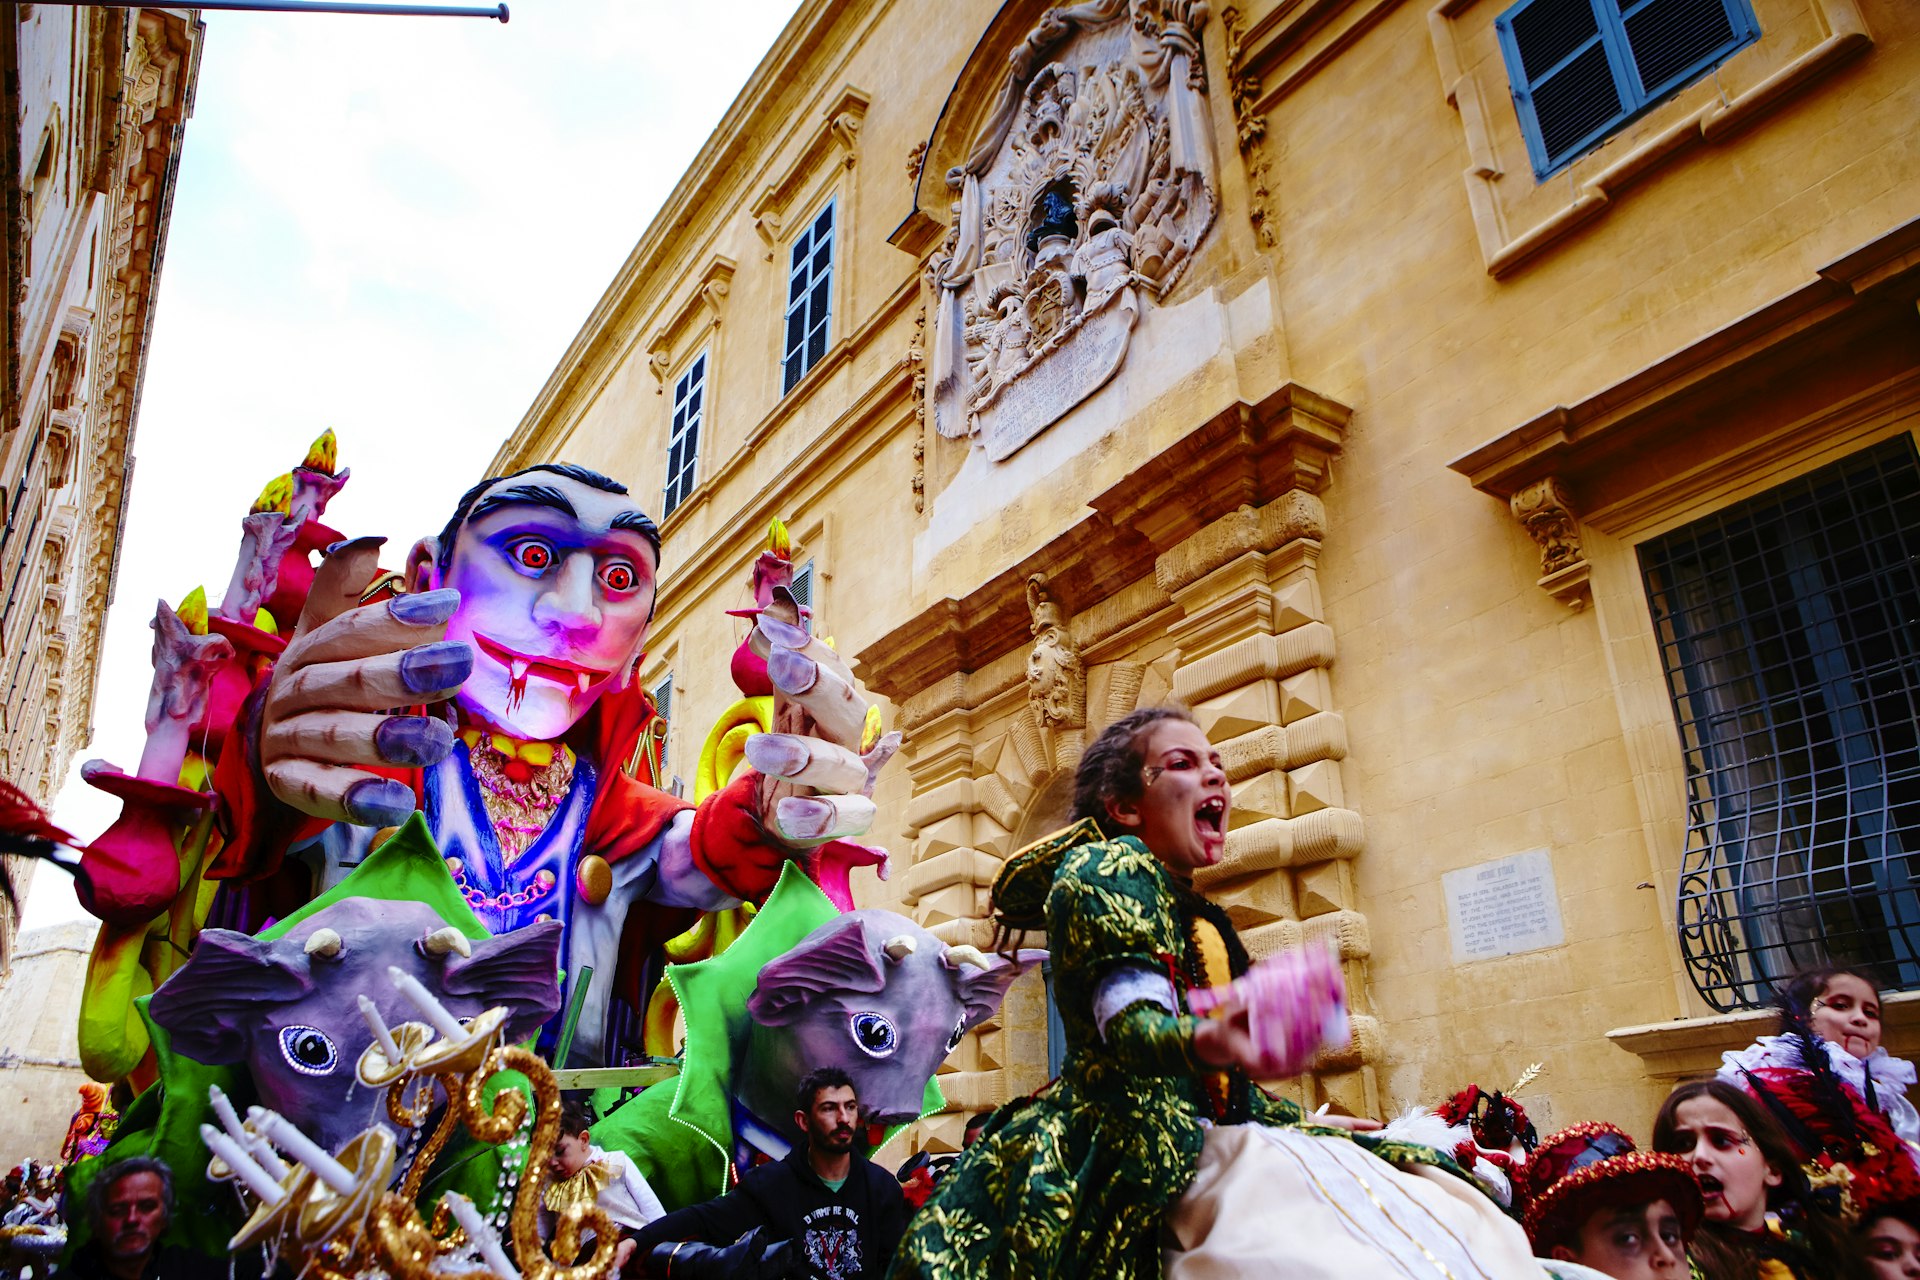 Dracula themed Carnival float in Valletta, Malta